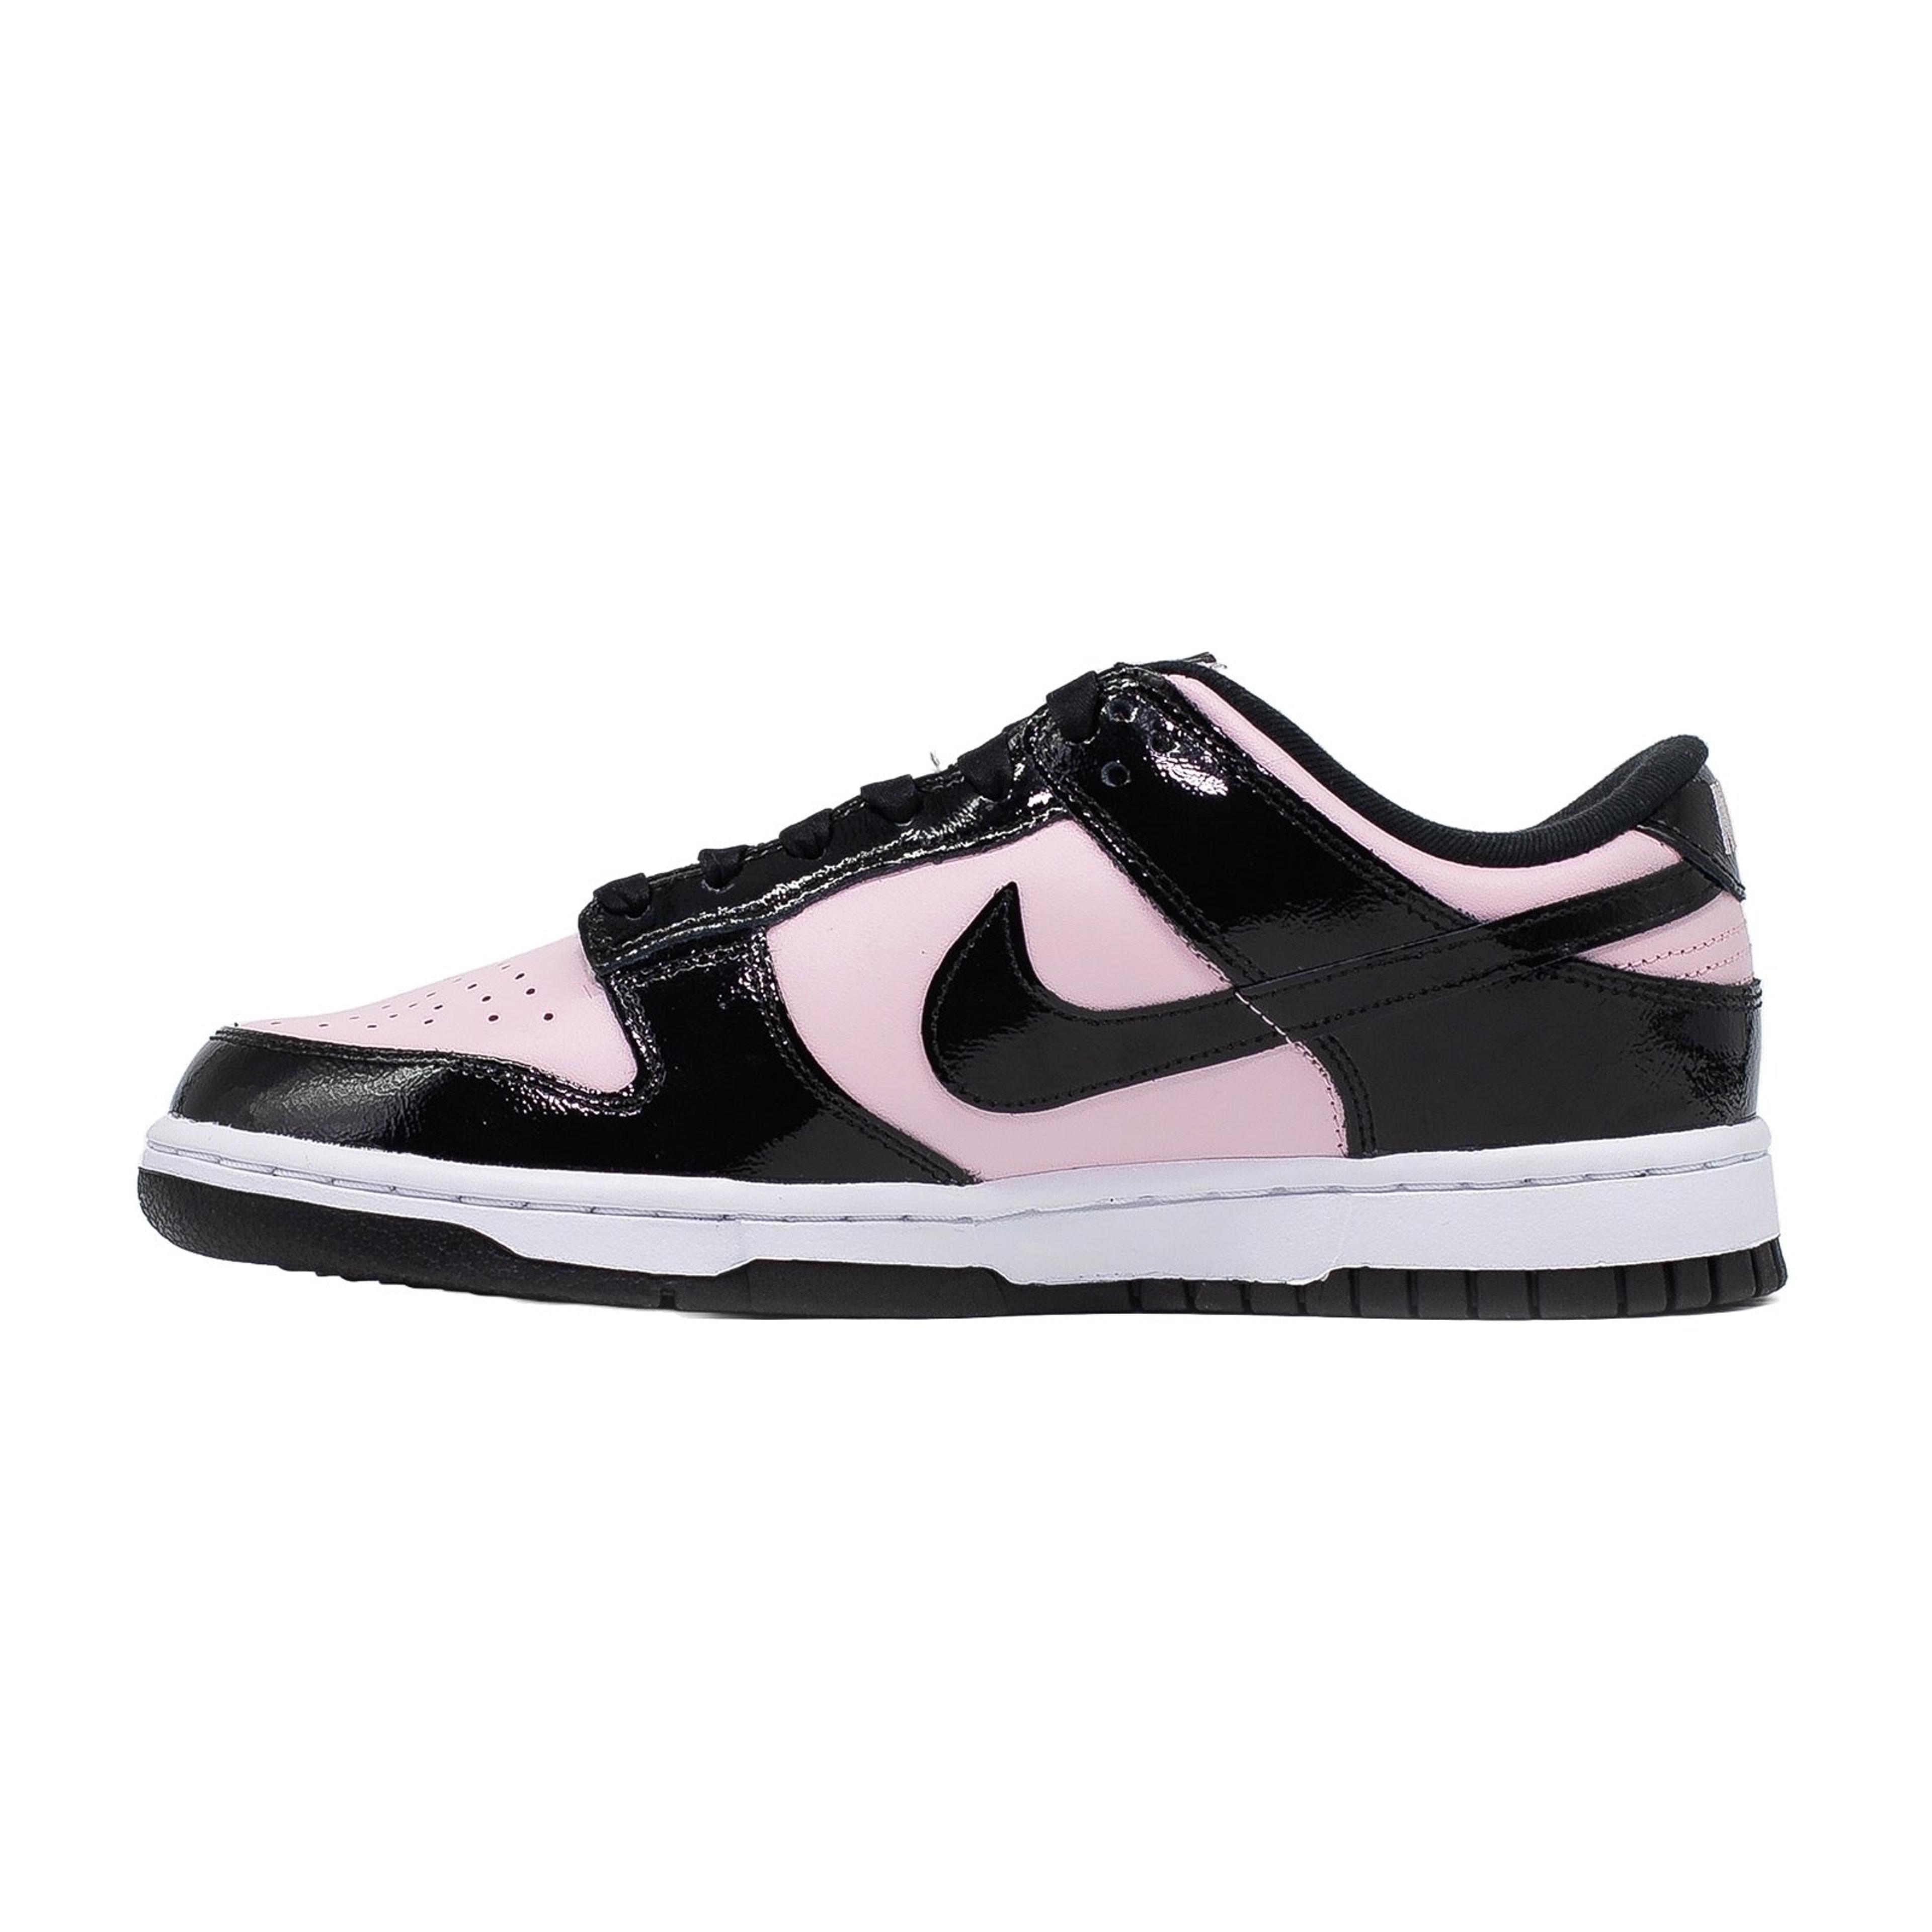 Alternate View 1 of Women's Nike Dunk Low, Pink Foam Black